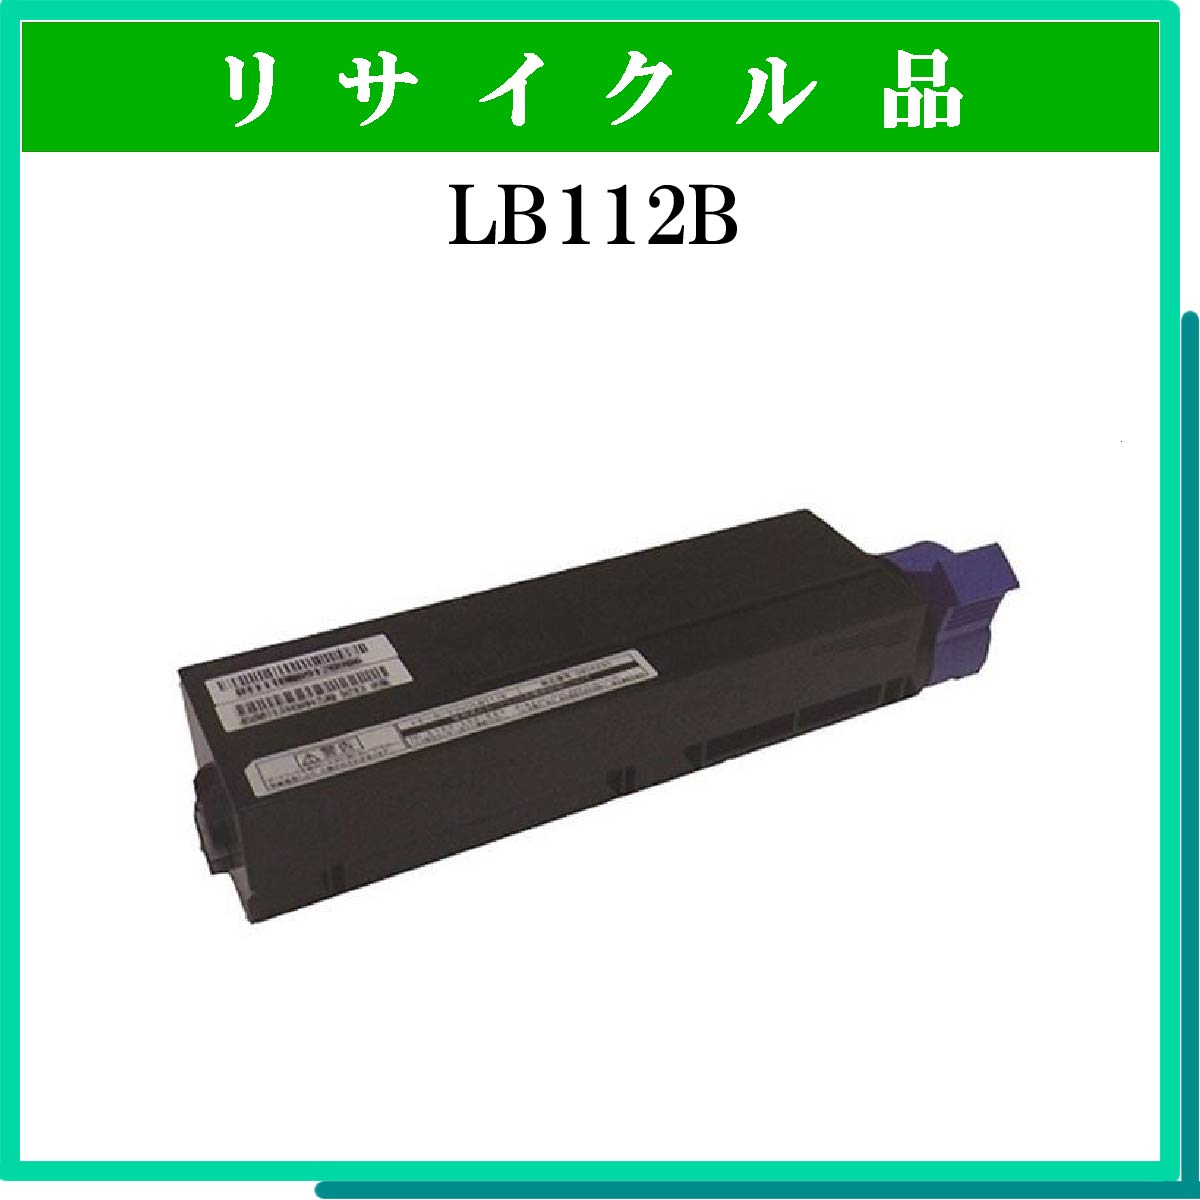 LB112B